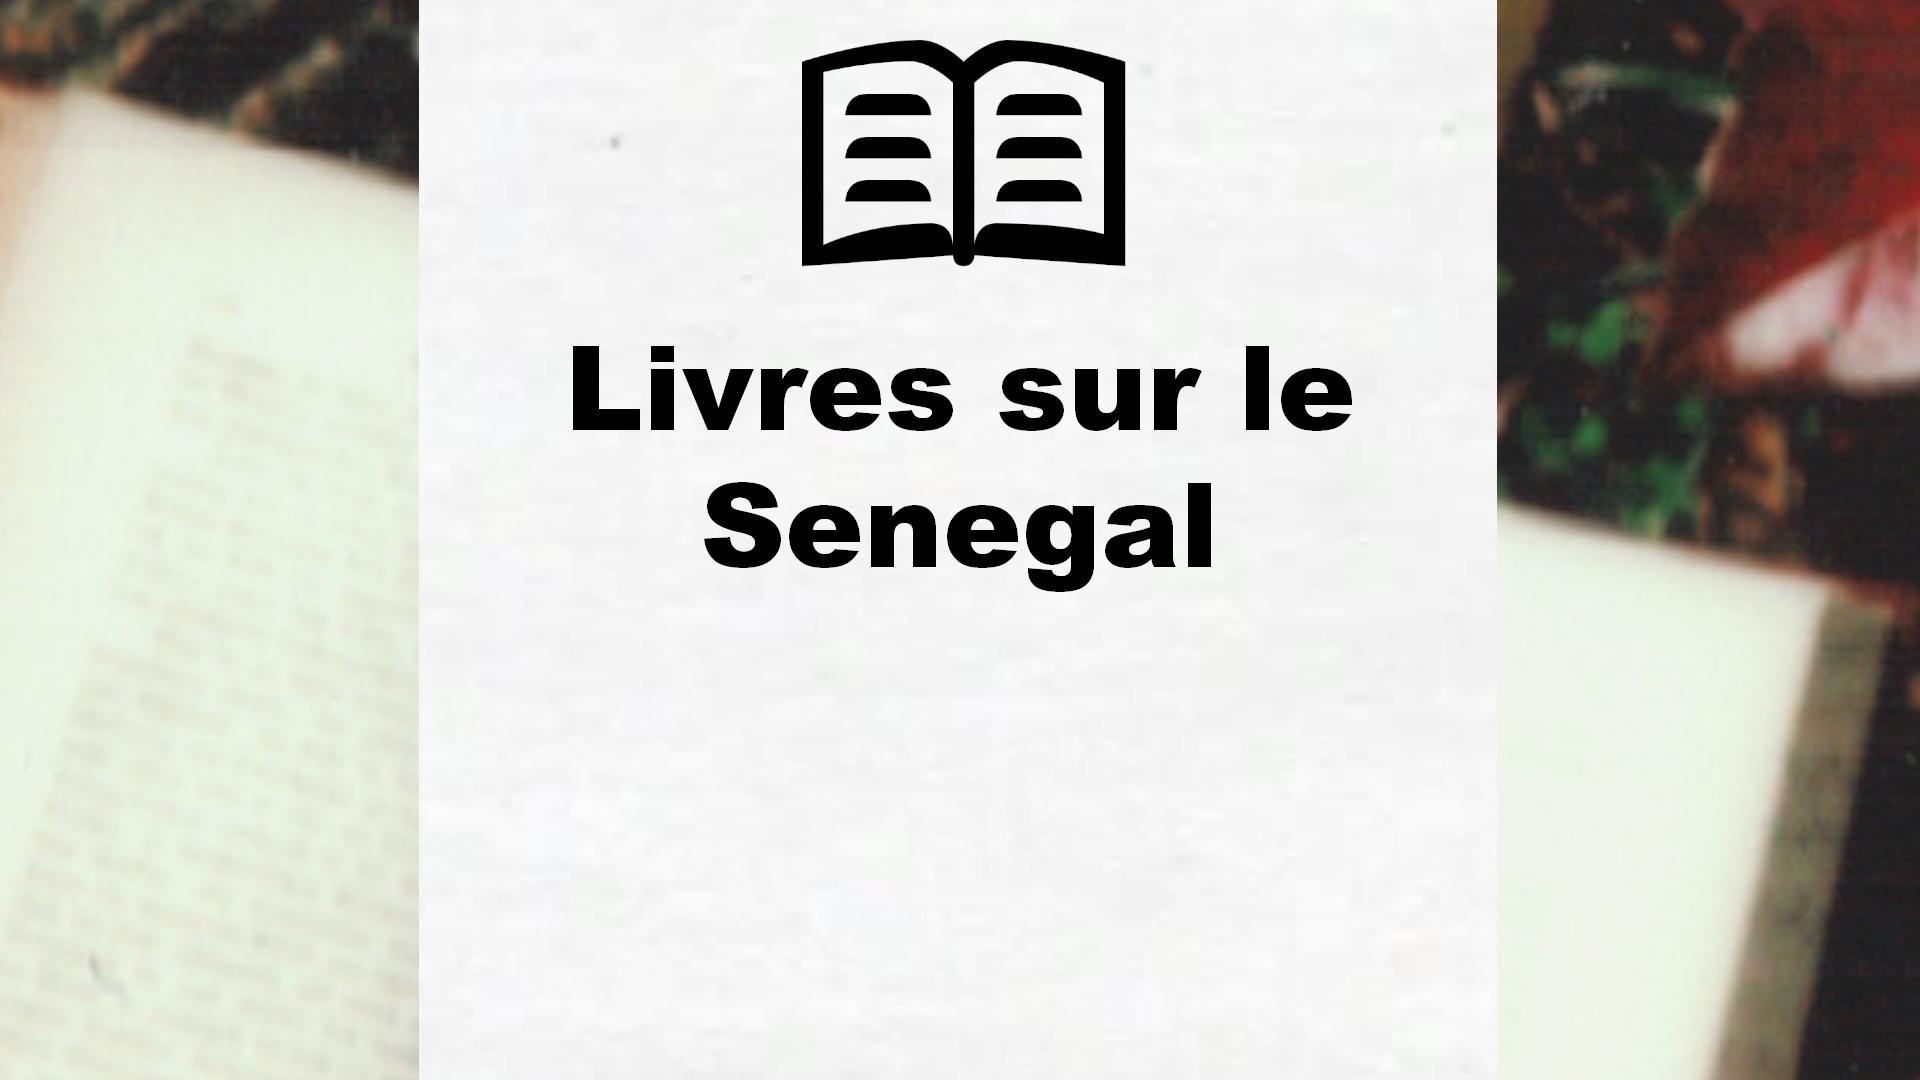 Livres sur le Senegal